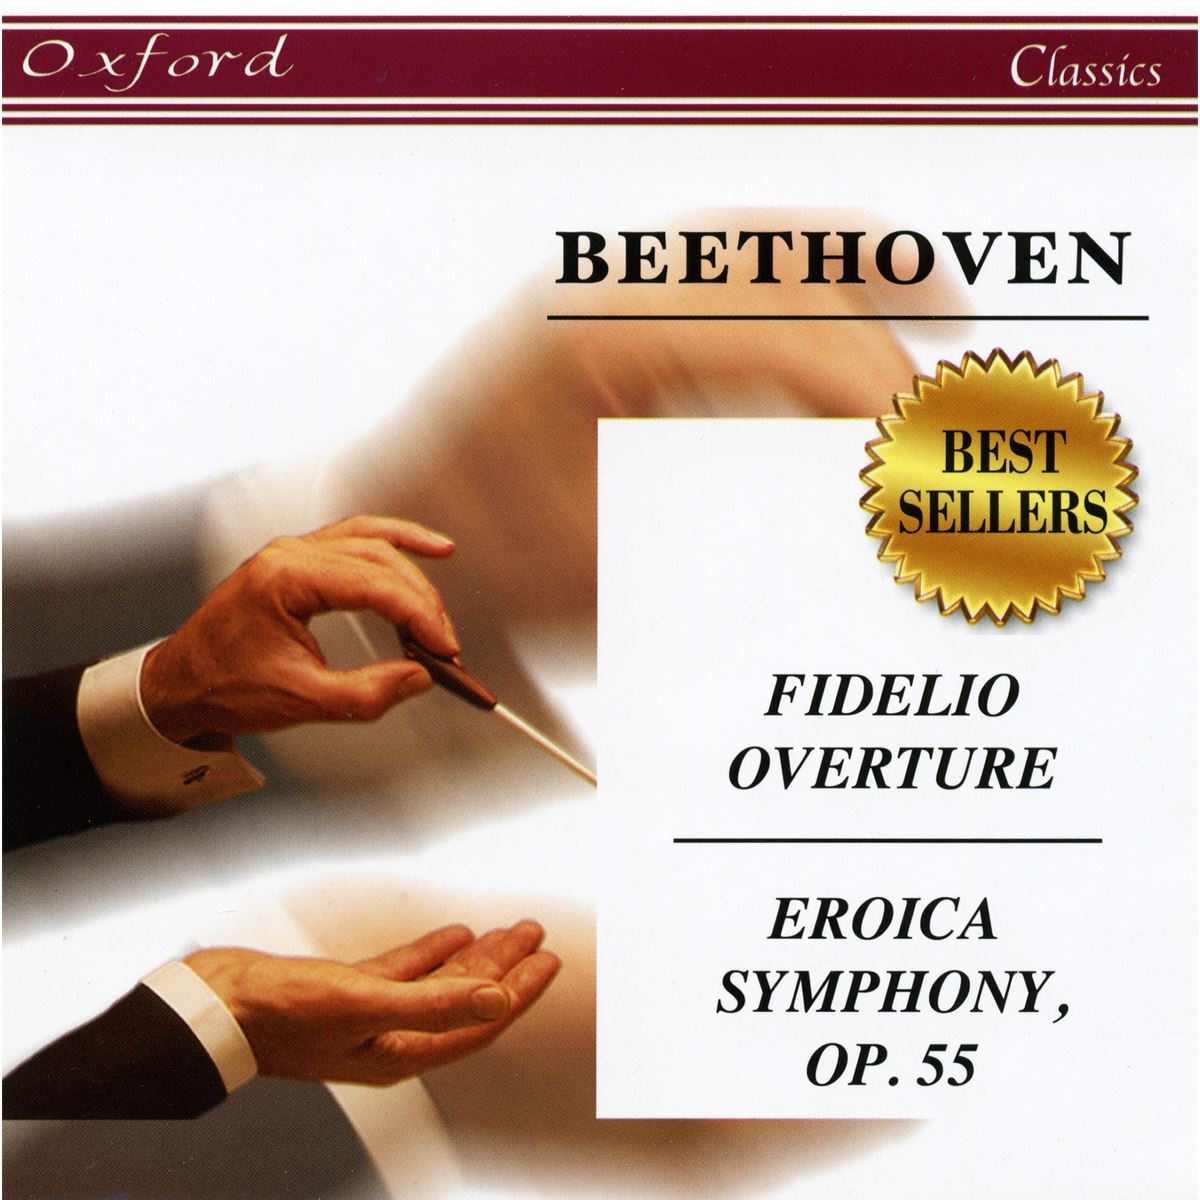 CD Oxford Classics Beethoven